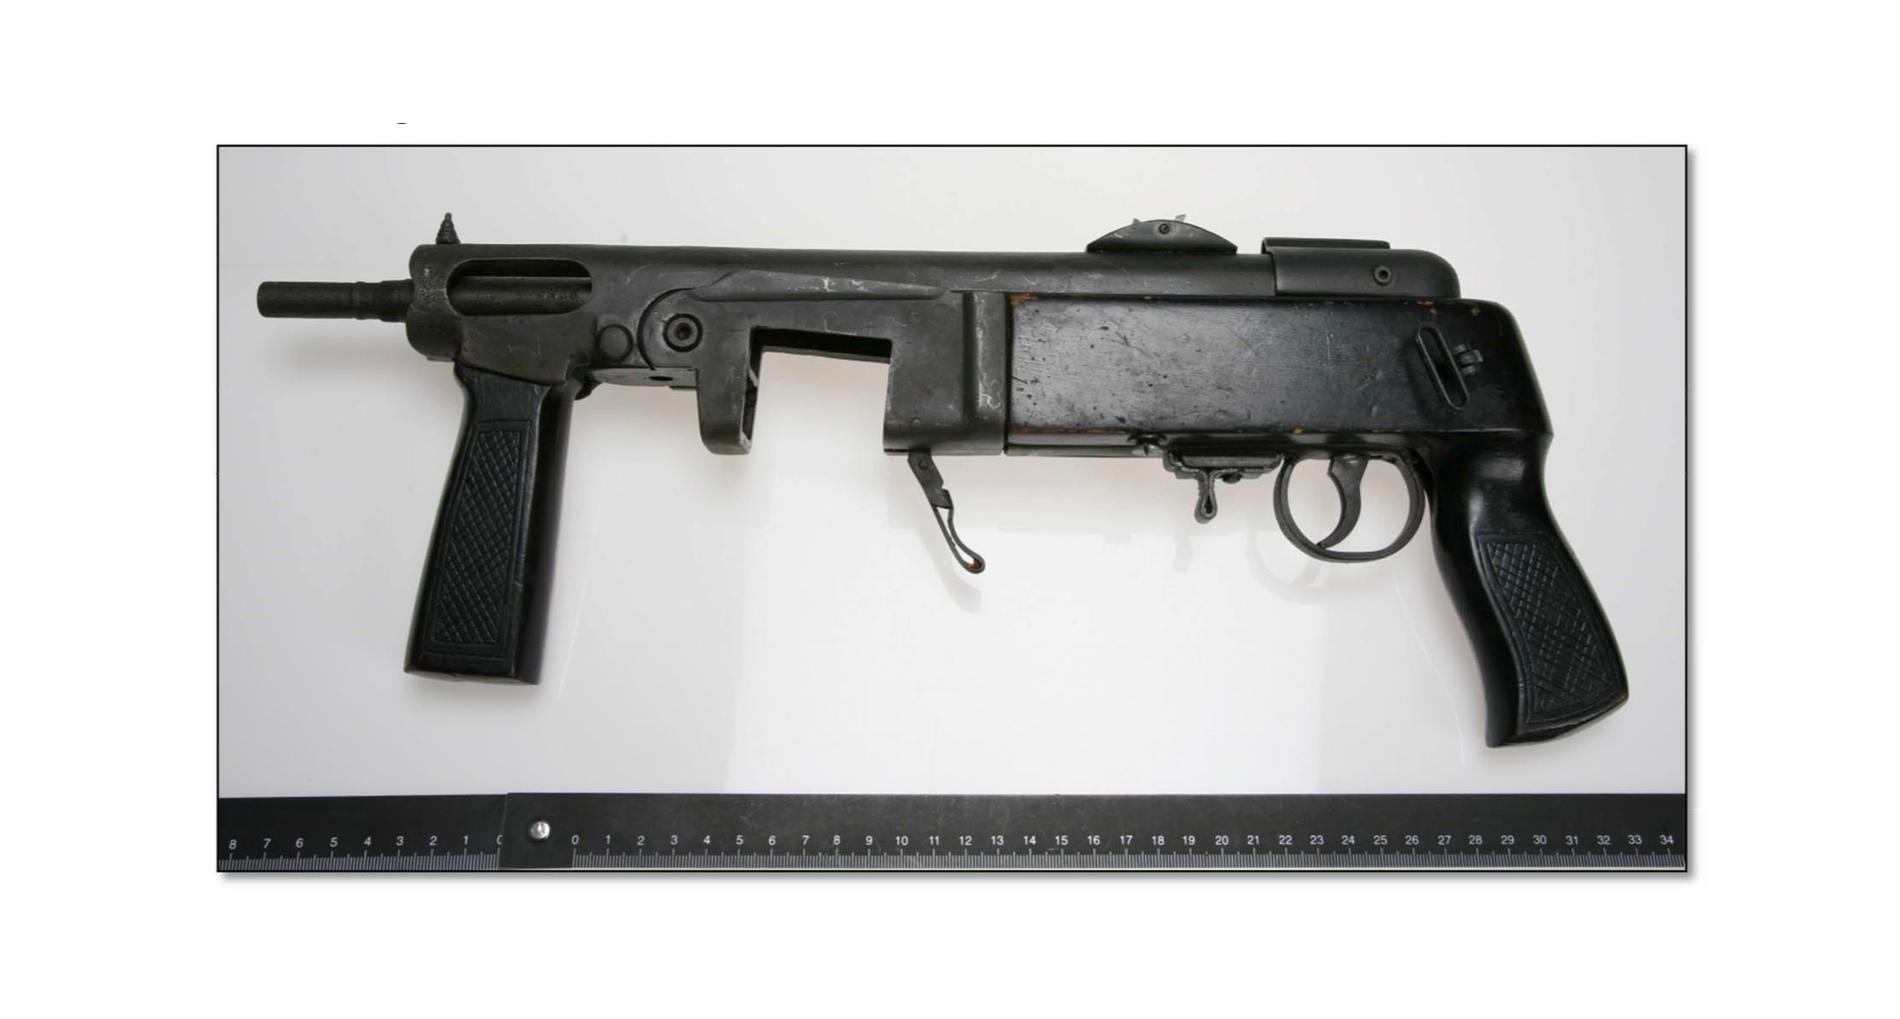 En kulsprutepistol, en skarpladdad pistol och cirka 25 kilo skarpa kulpatroner hittades i samband med en inre utlänningskontroll i Malmö (bild ur förundersökningen).